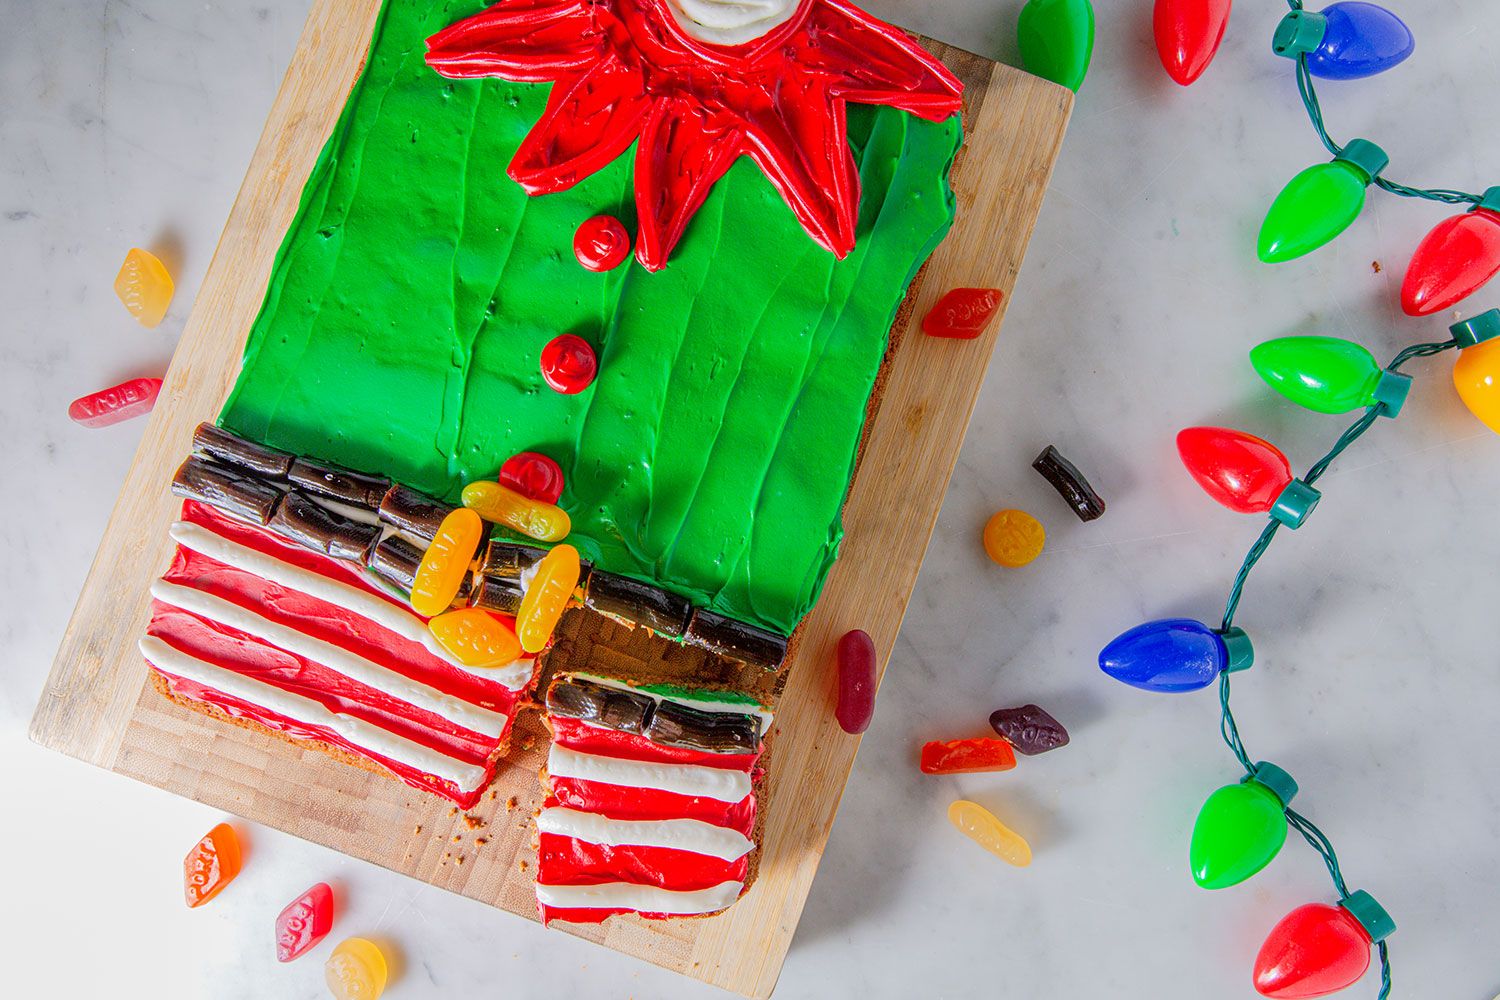 Mix and Match Christmas Cake Video Tutorial — Ennas' Cake Design